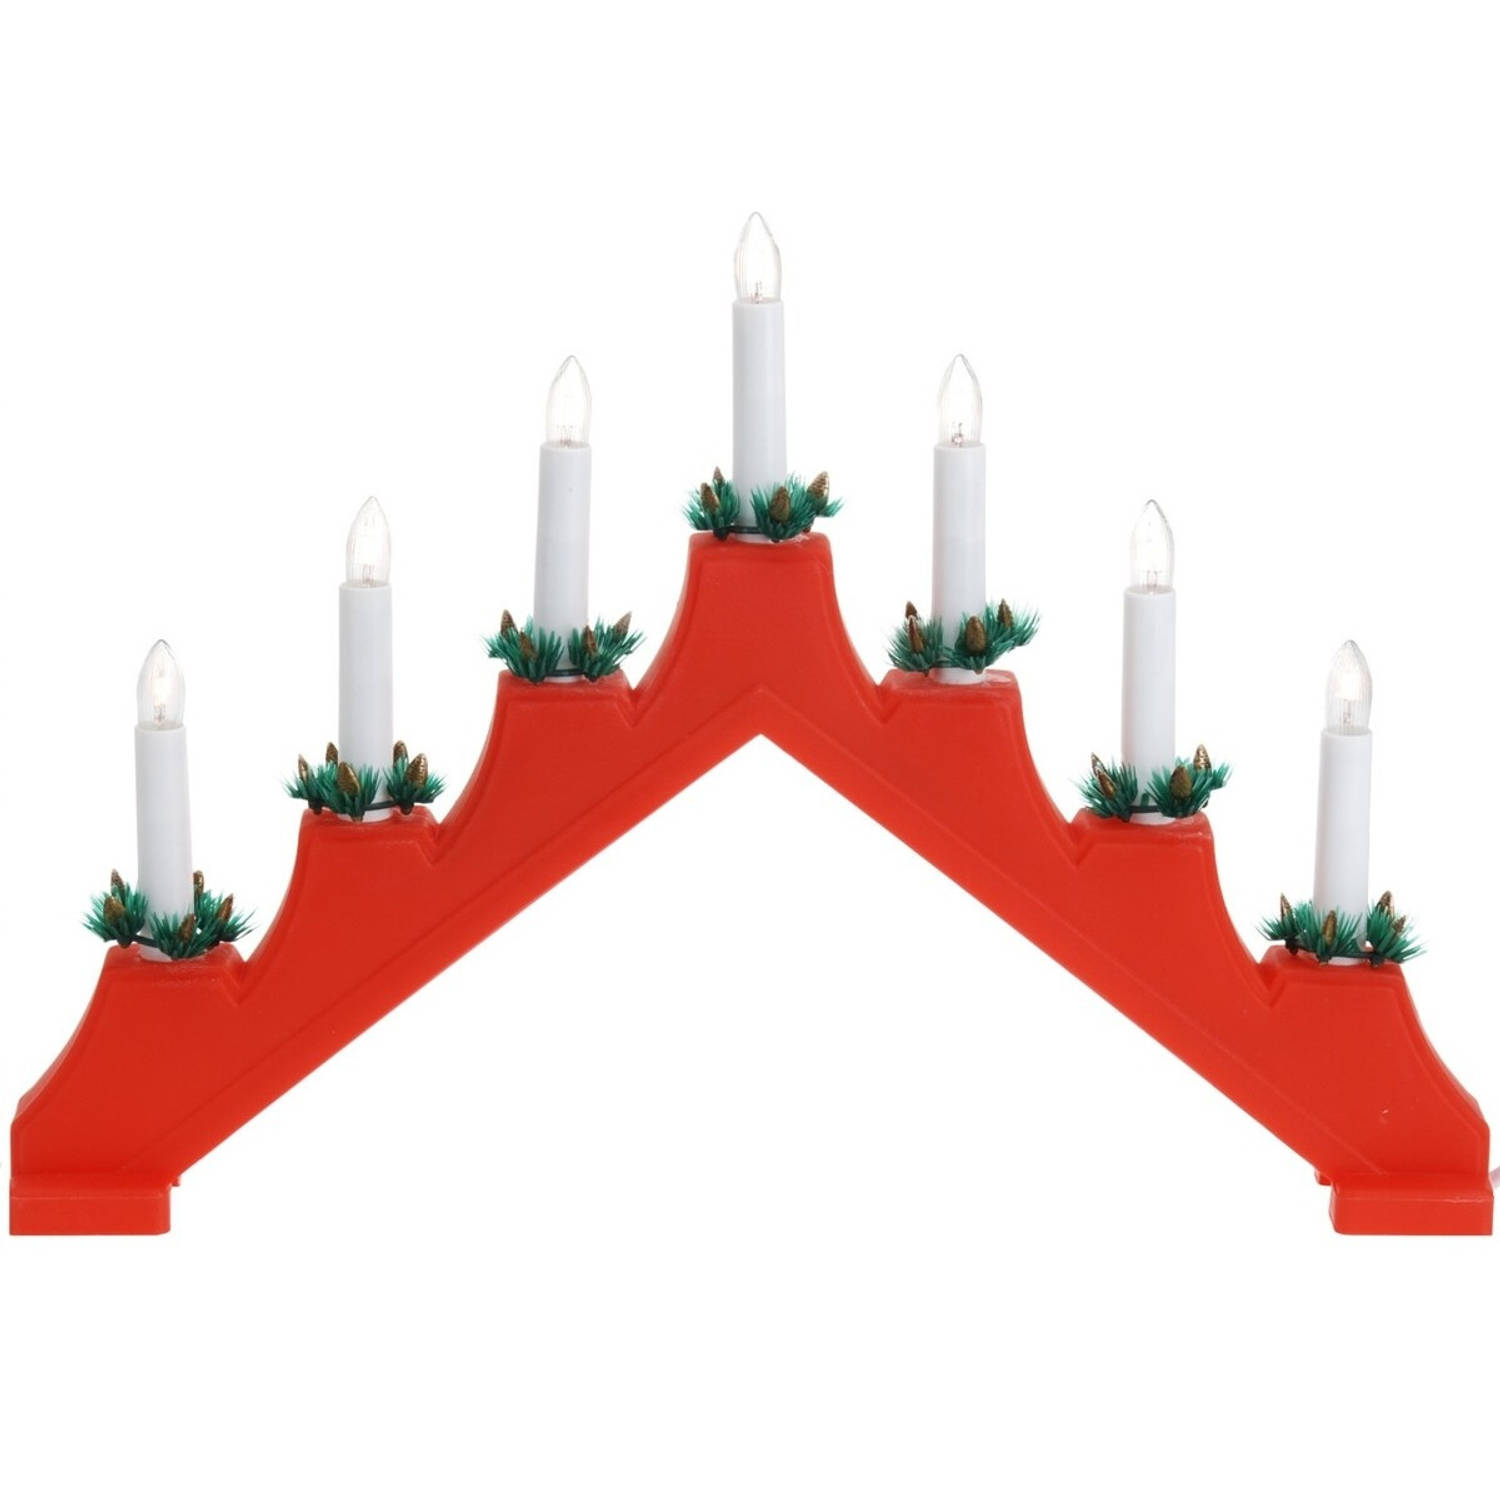 Rode kaarsenbrug met 7 lampjes 41 x 30 cm kerstverlichting figuur